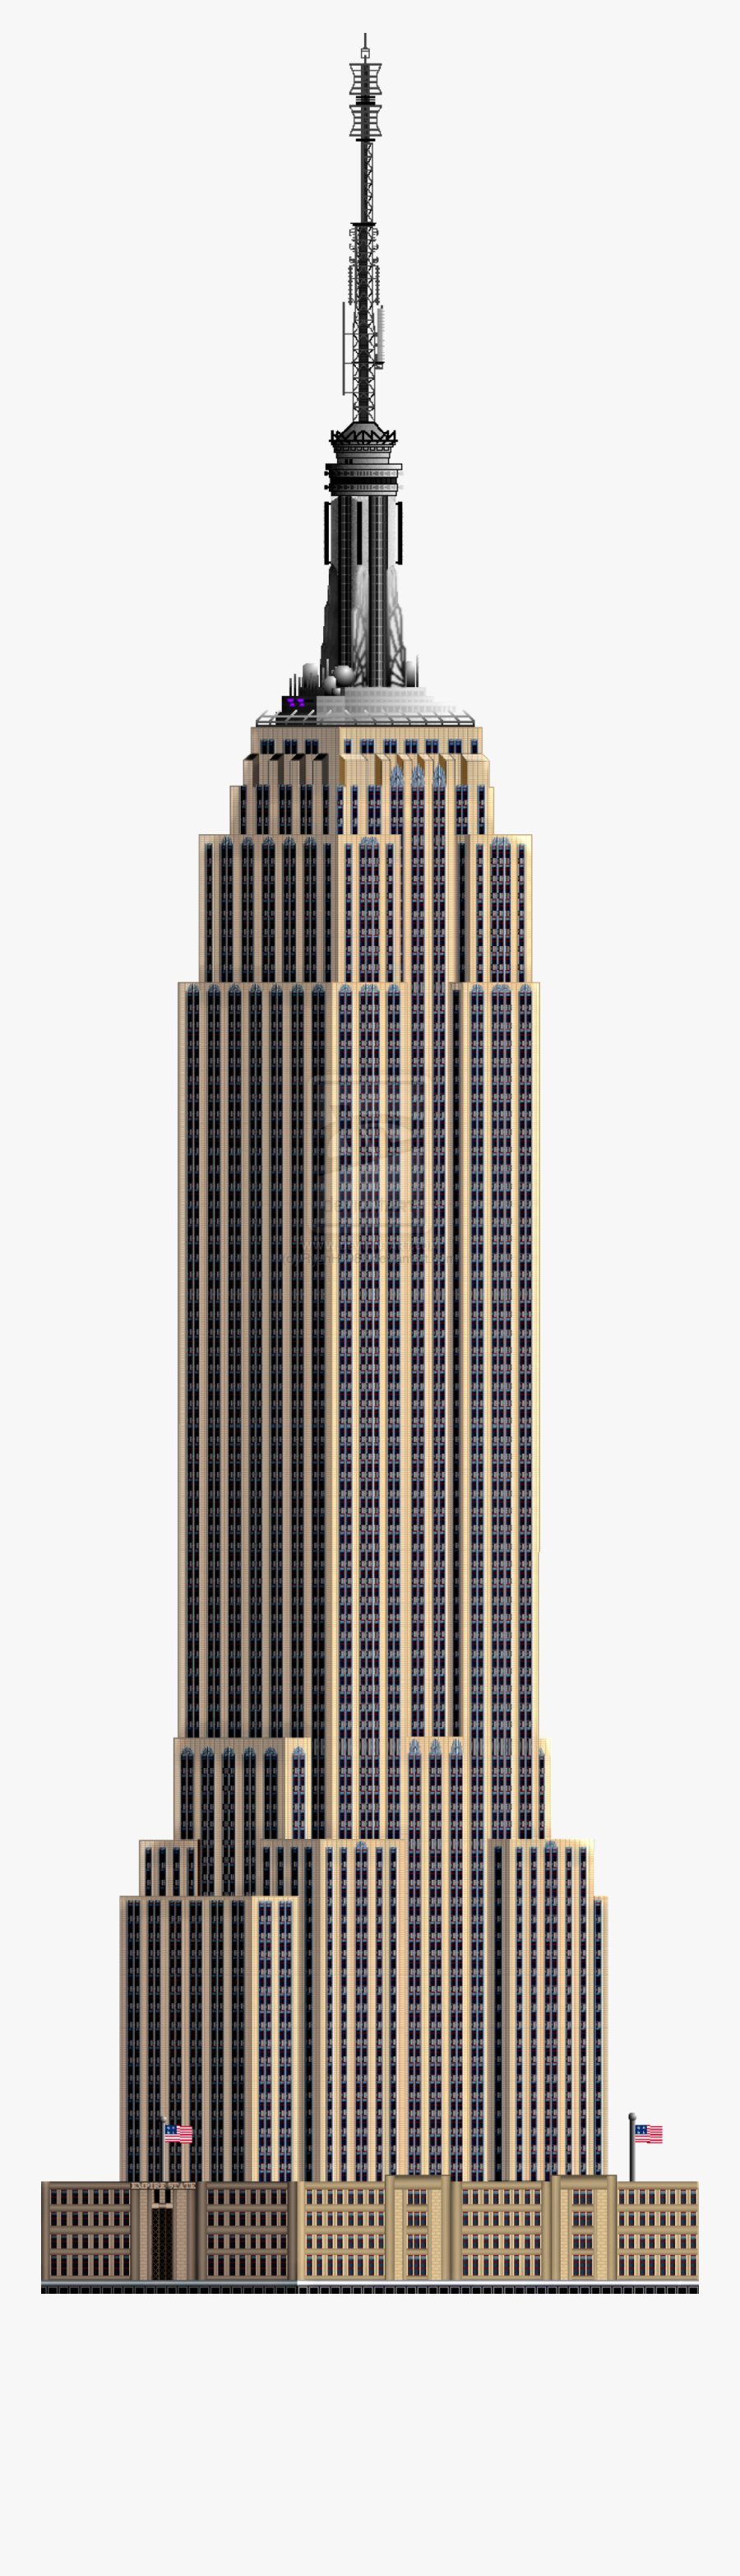 Empire State Building - Empire State Building Png, Transparent Clipart